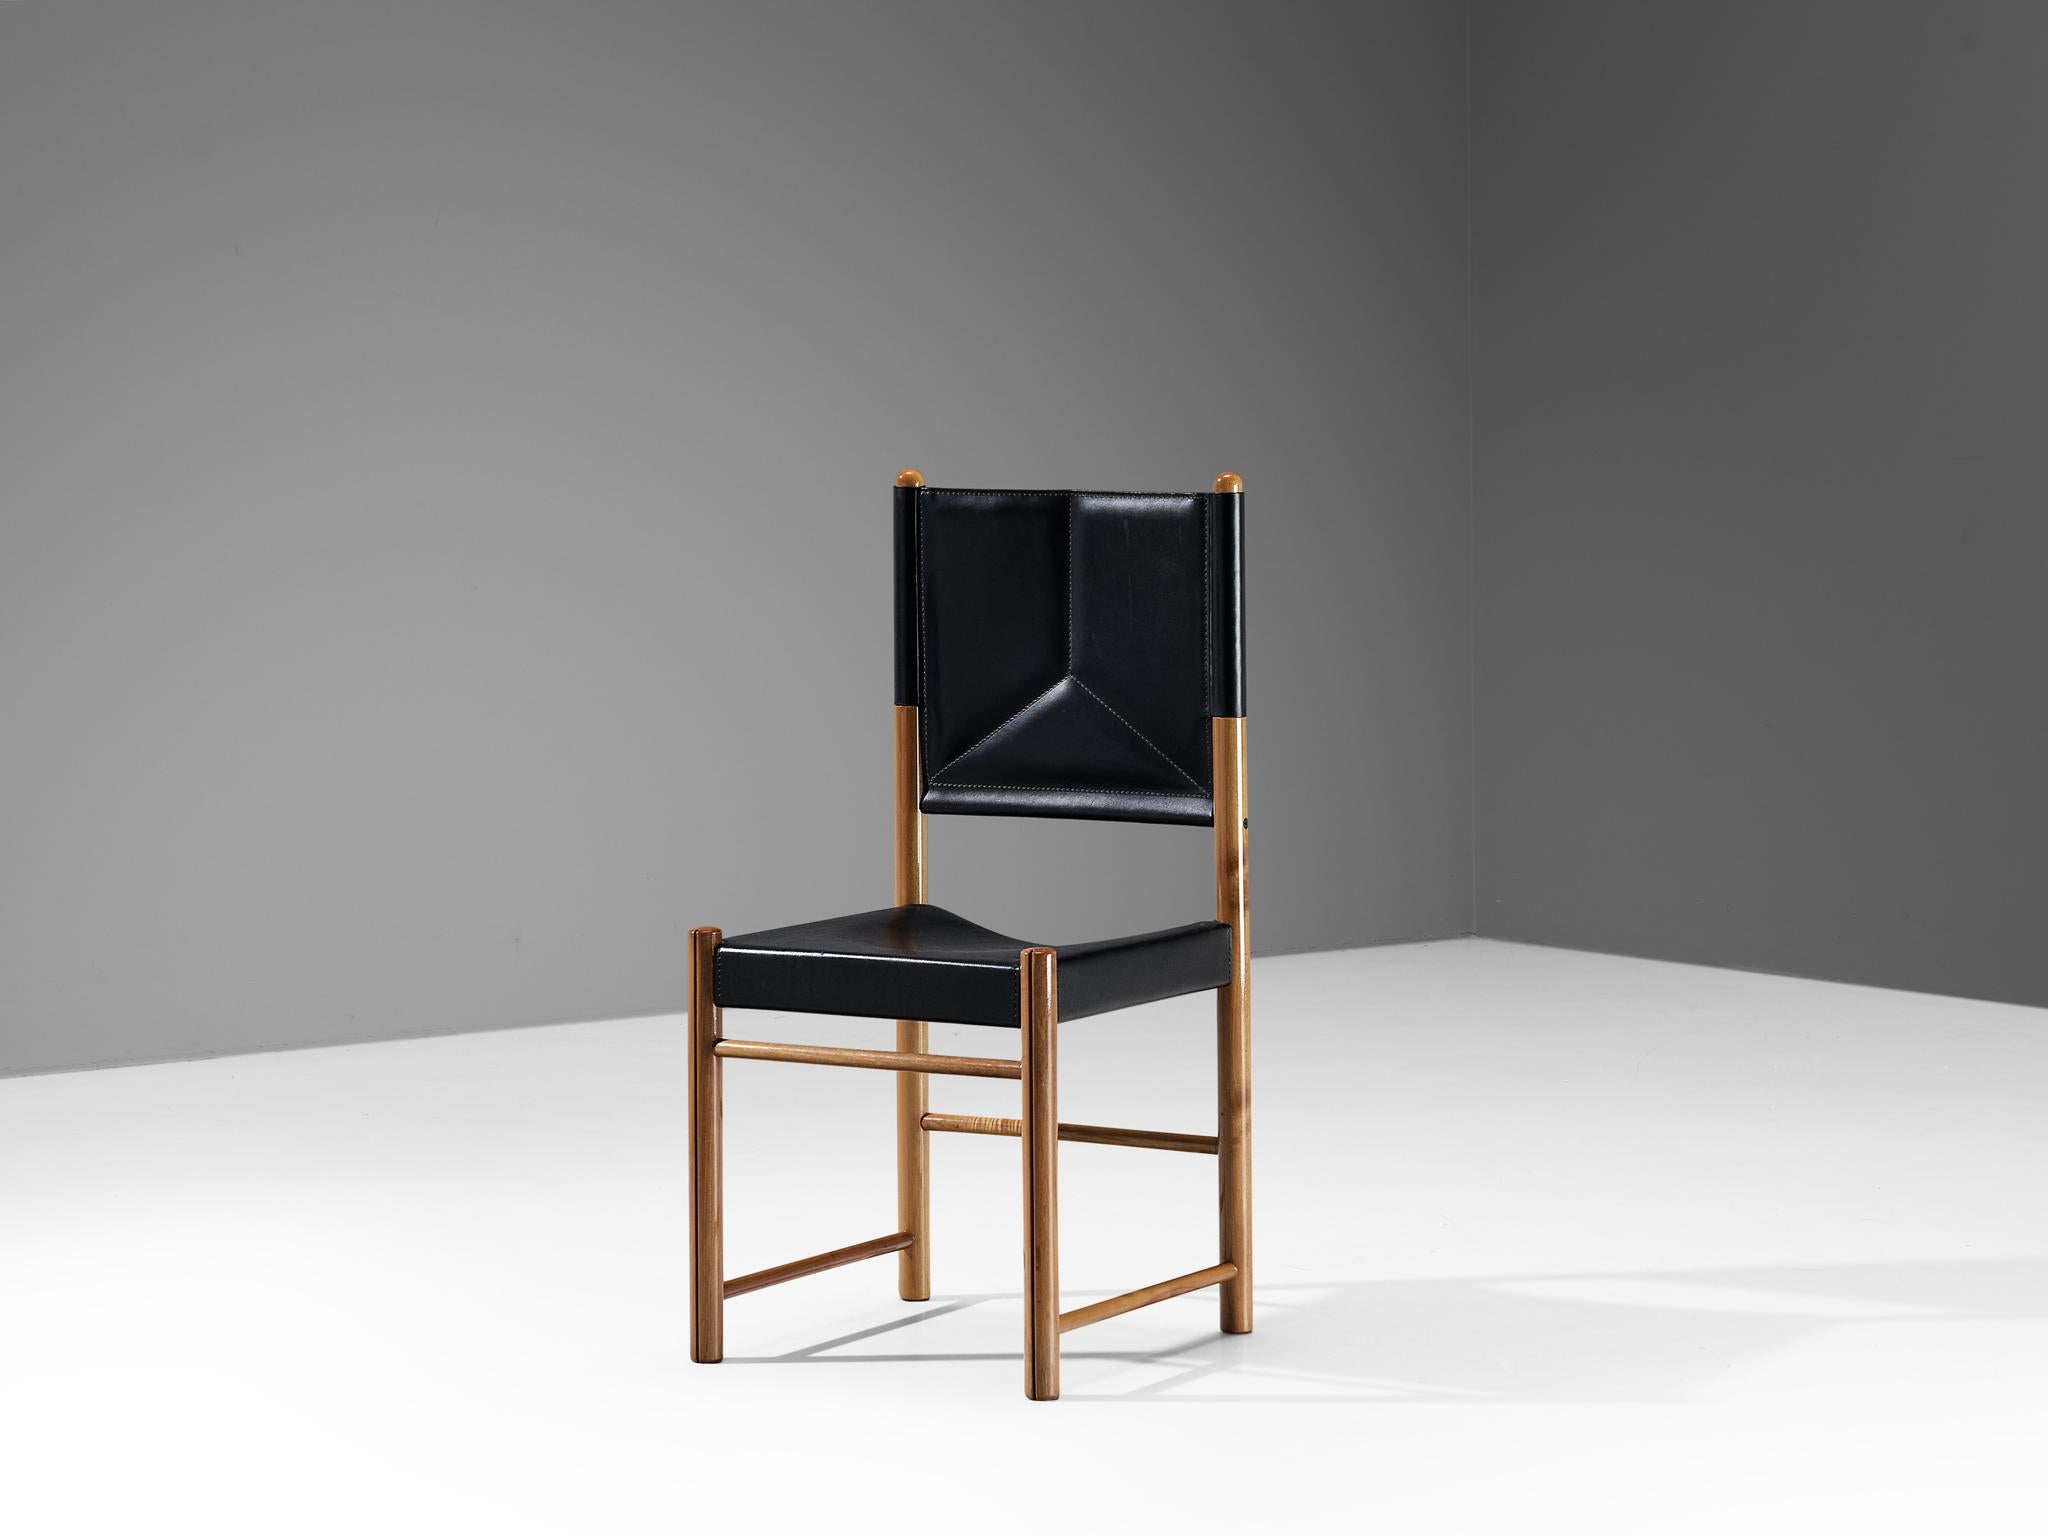 Esszimmerstuhl, Nussbaum, Leder, Italien, 1970er Jahre

Ein filigraner, wohlproportionierter Stuhl, der das Interieur auf kraftvolle und starke Weise aufwerten wird. Der Holzrahmen besteht aus zylindrischen Balken, an denen das schwarze Leder